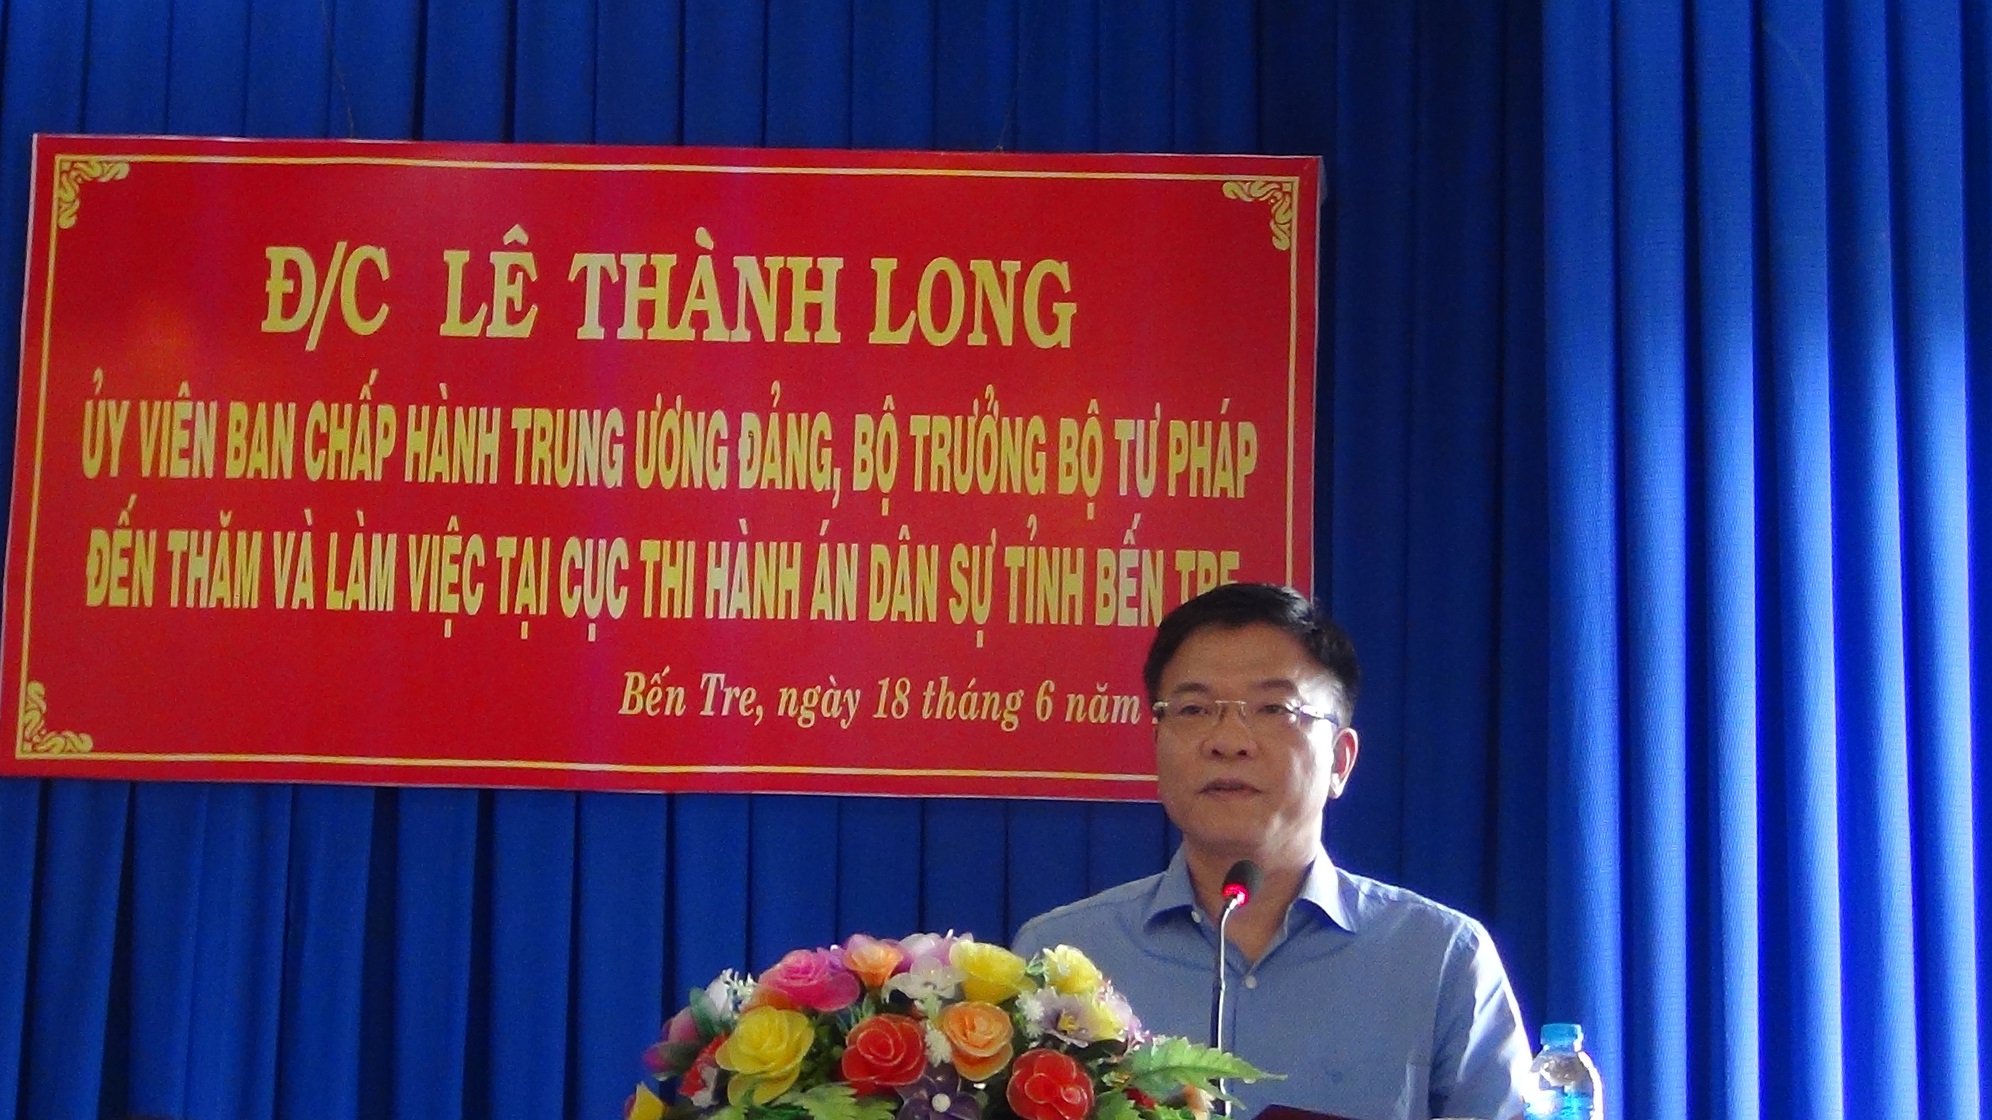 Đồng chí Lê Thành Long, Ủy viên Ban chấp hành Trung ương Đảng, Bộ trưởng Bộ Tư pháp đến thăm và làm việc tại Cục Thi hành án dân sự tỉnh